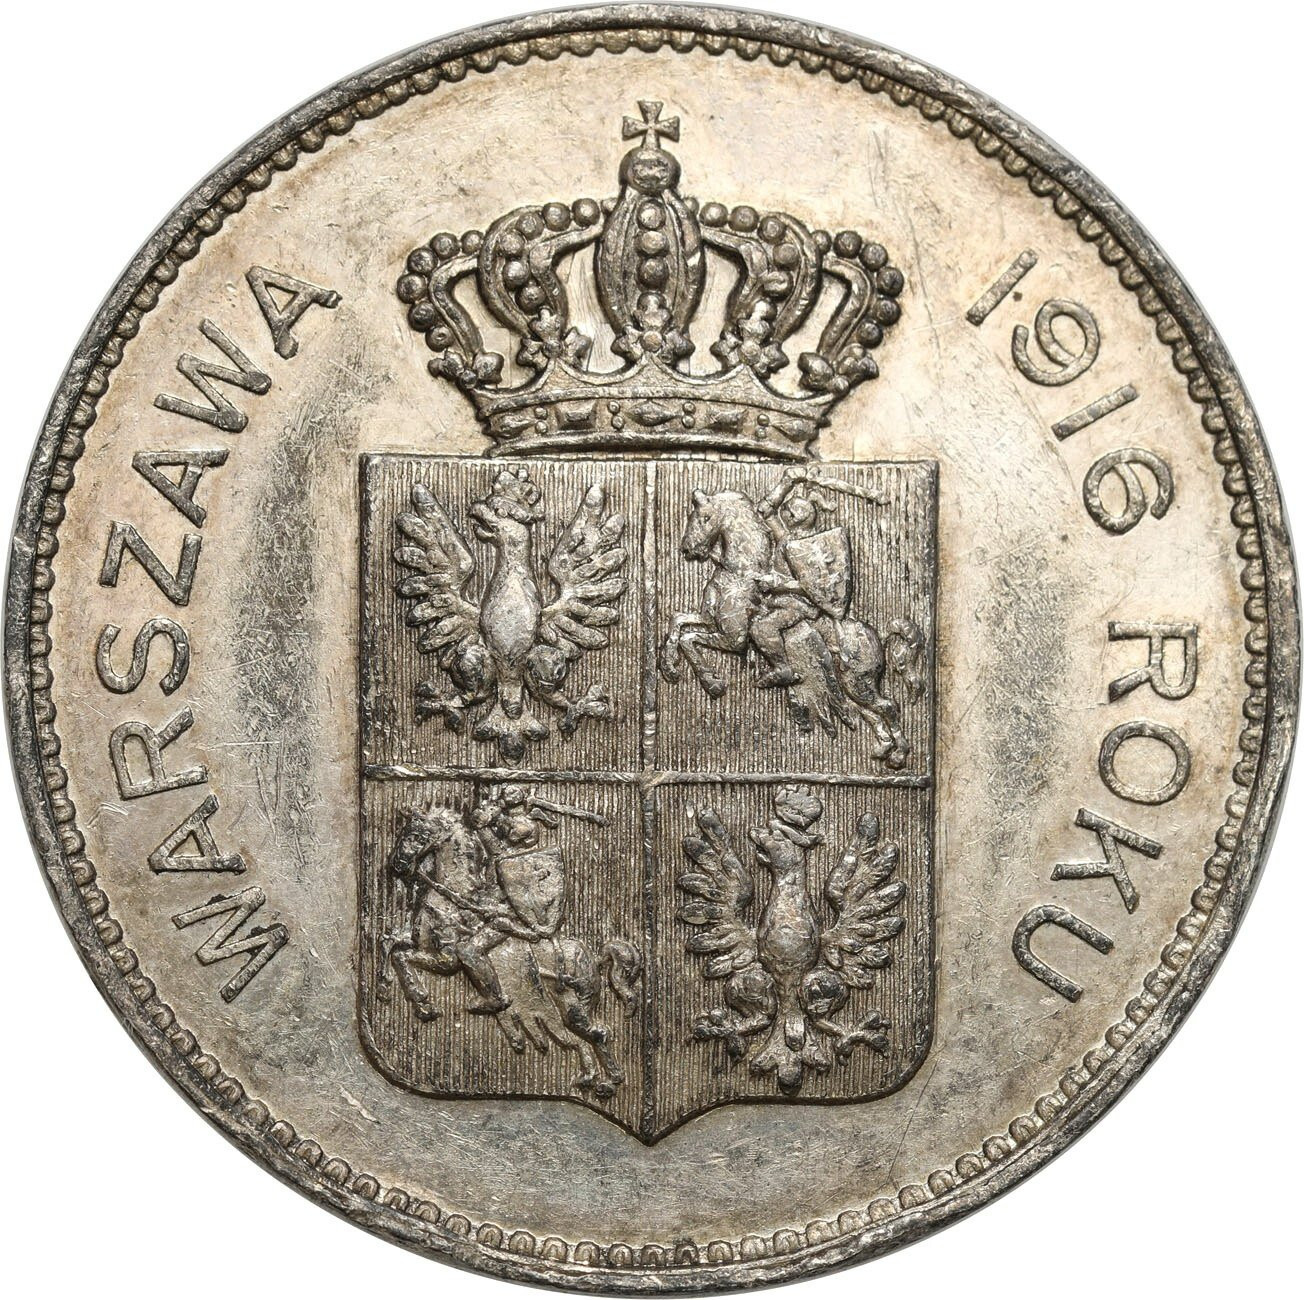 Polska. Medal 1916 - 125 lat Konstytucji 3-go maja - PIĘKNY